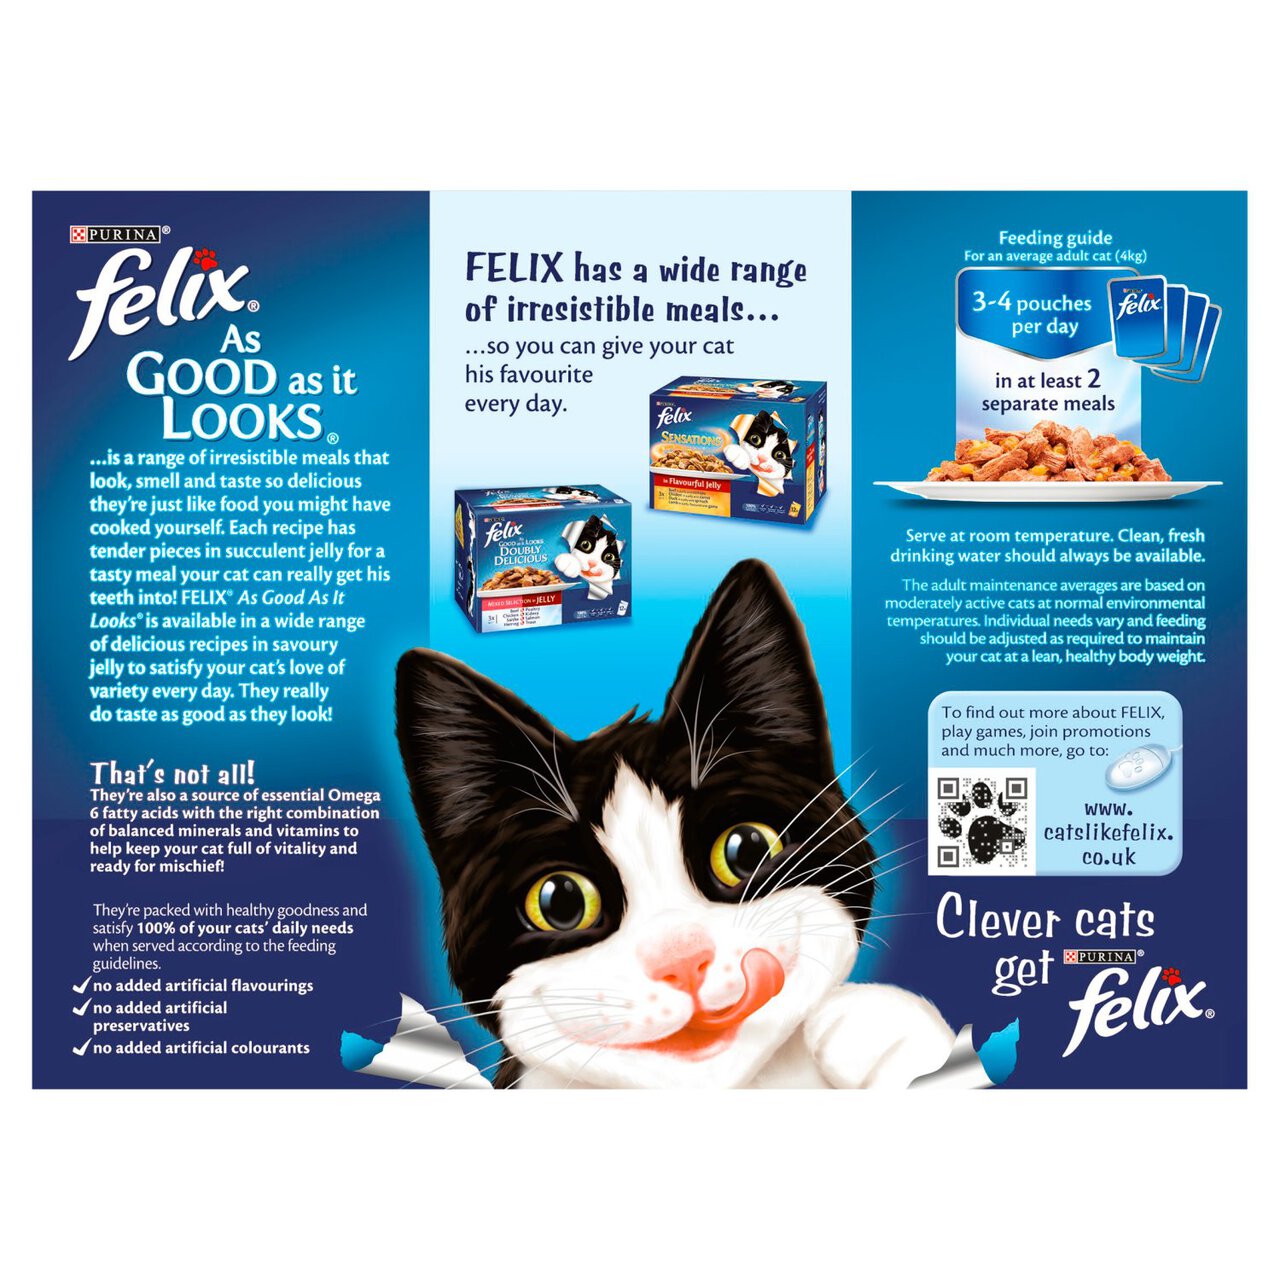 Felix As Good As It Looks Cat Food Ocean Feasts in Jelly 12 x 100g